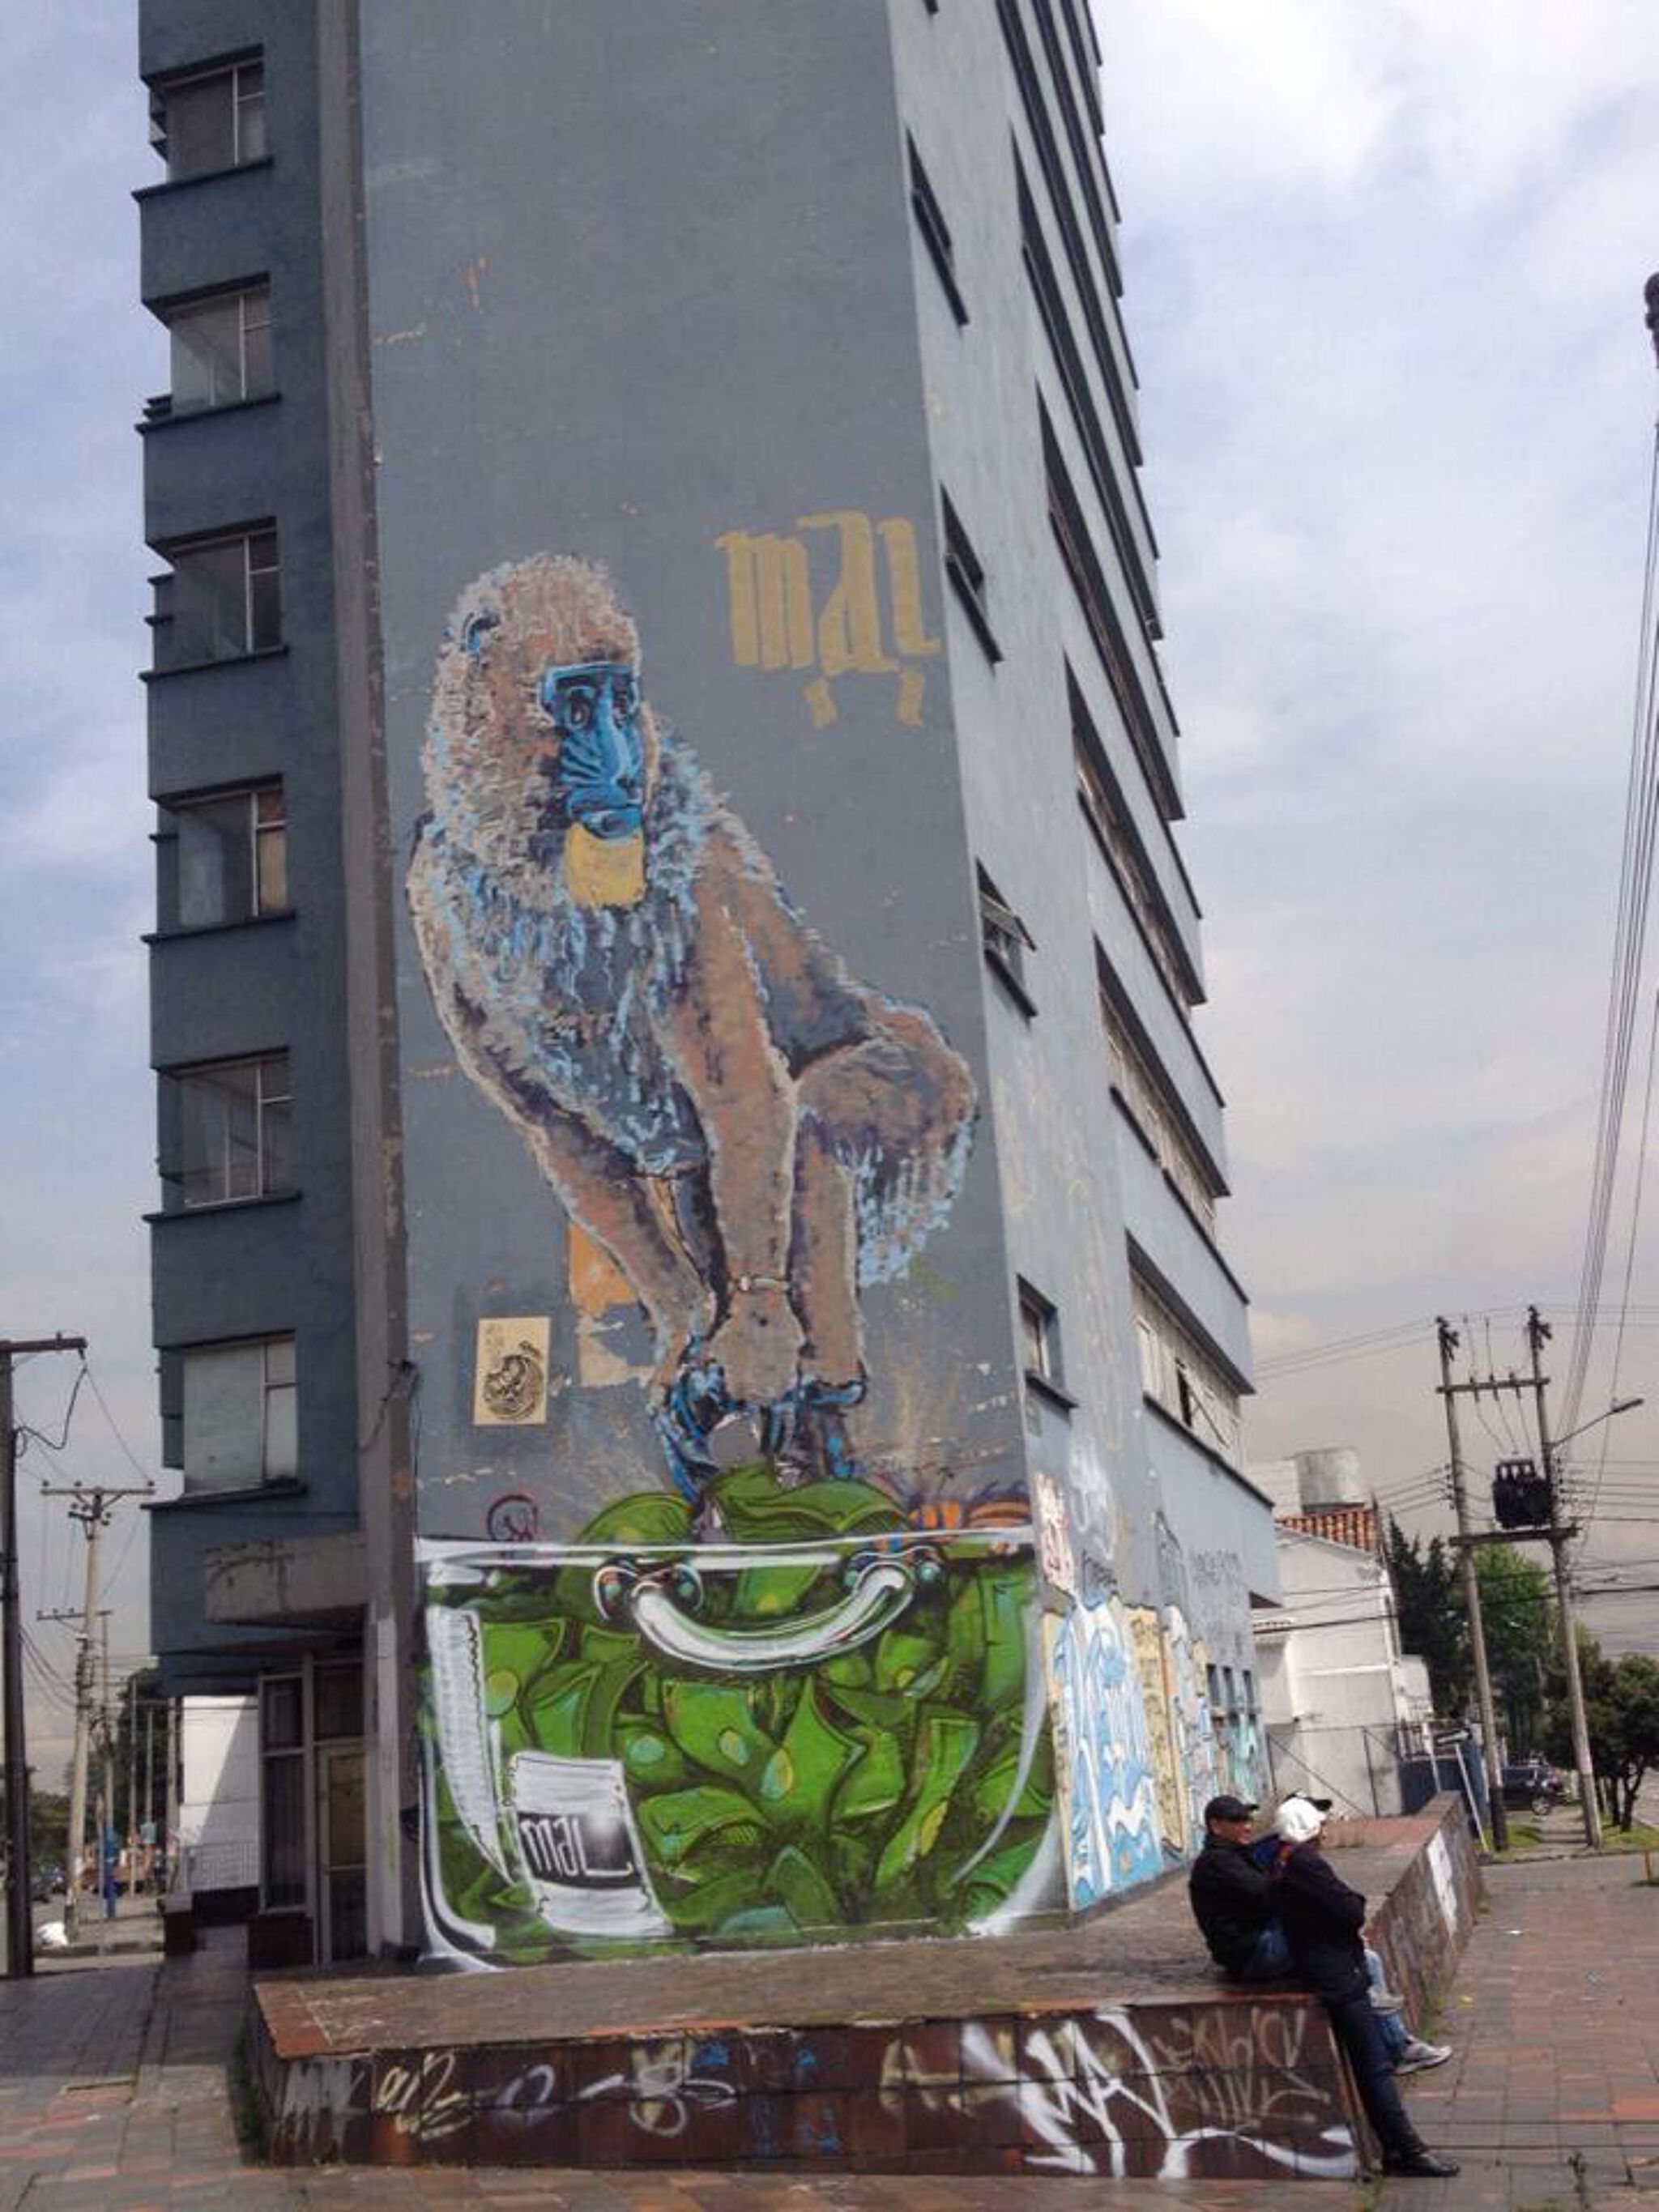 MAL Crew&mdash;Gorilla in building - Gorila en edificio